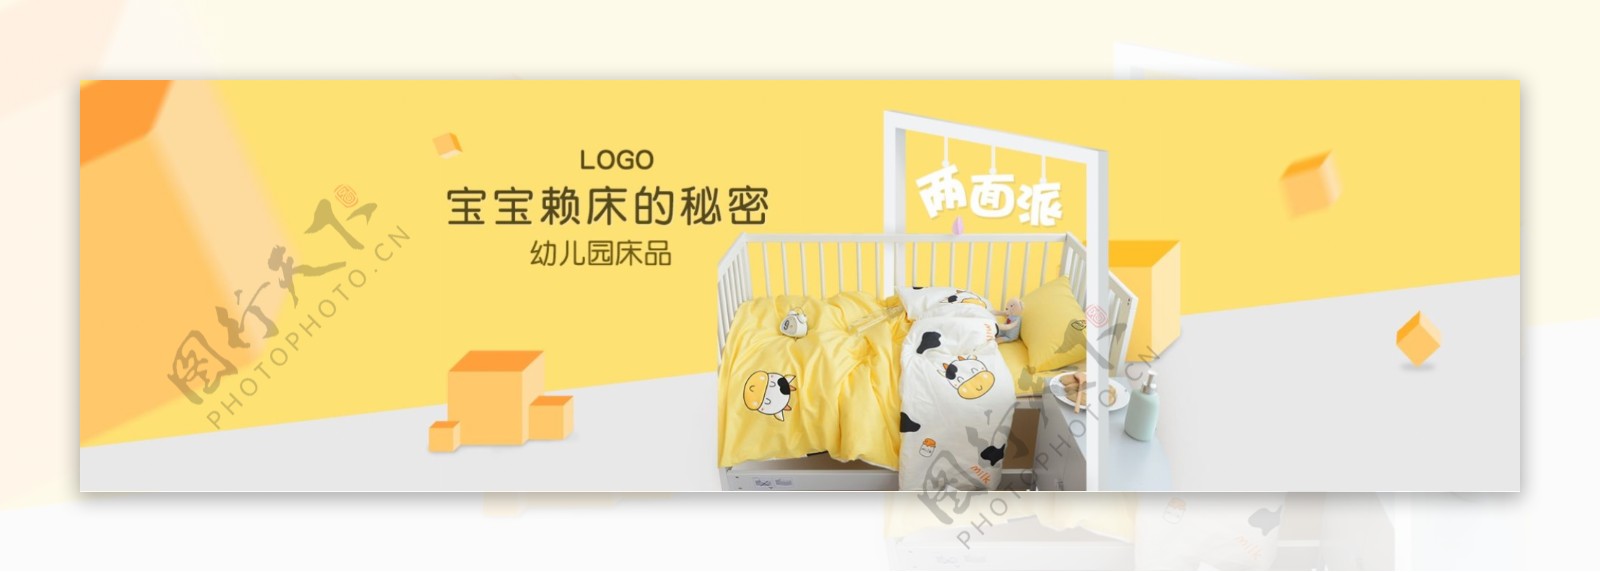 淘宝海报促销黄色背景儿童床品活动